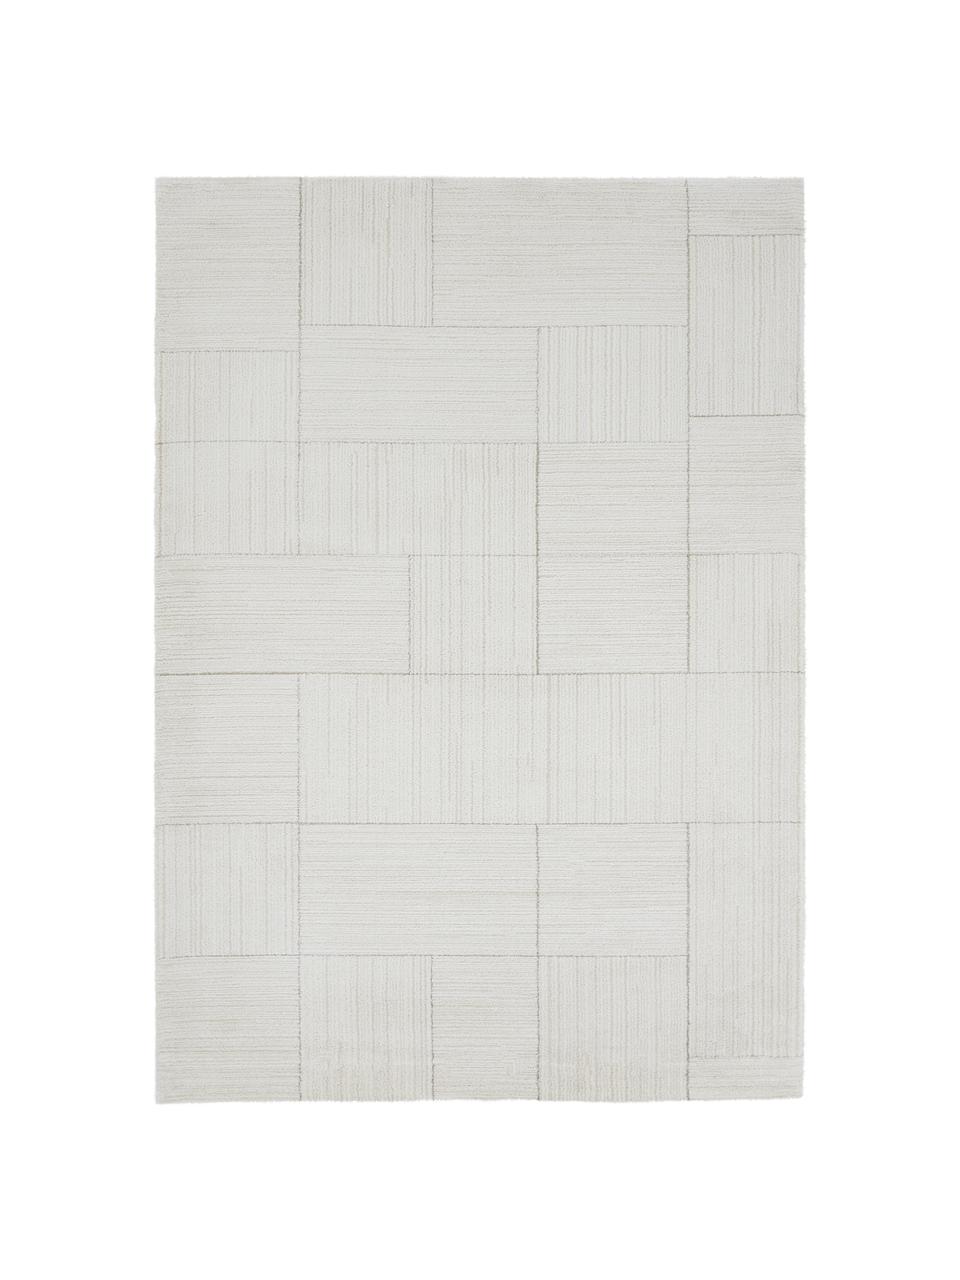 Načechraný koberec s vysokým vlasem Lawrence, Přírodní bílá, béžová